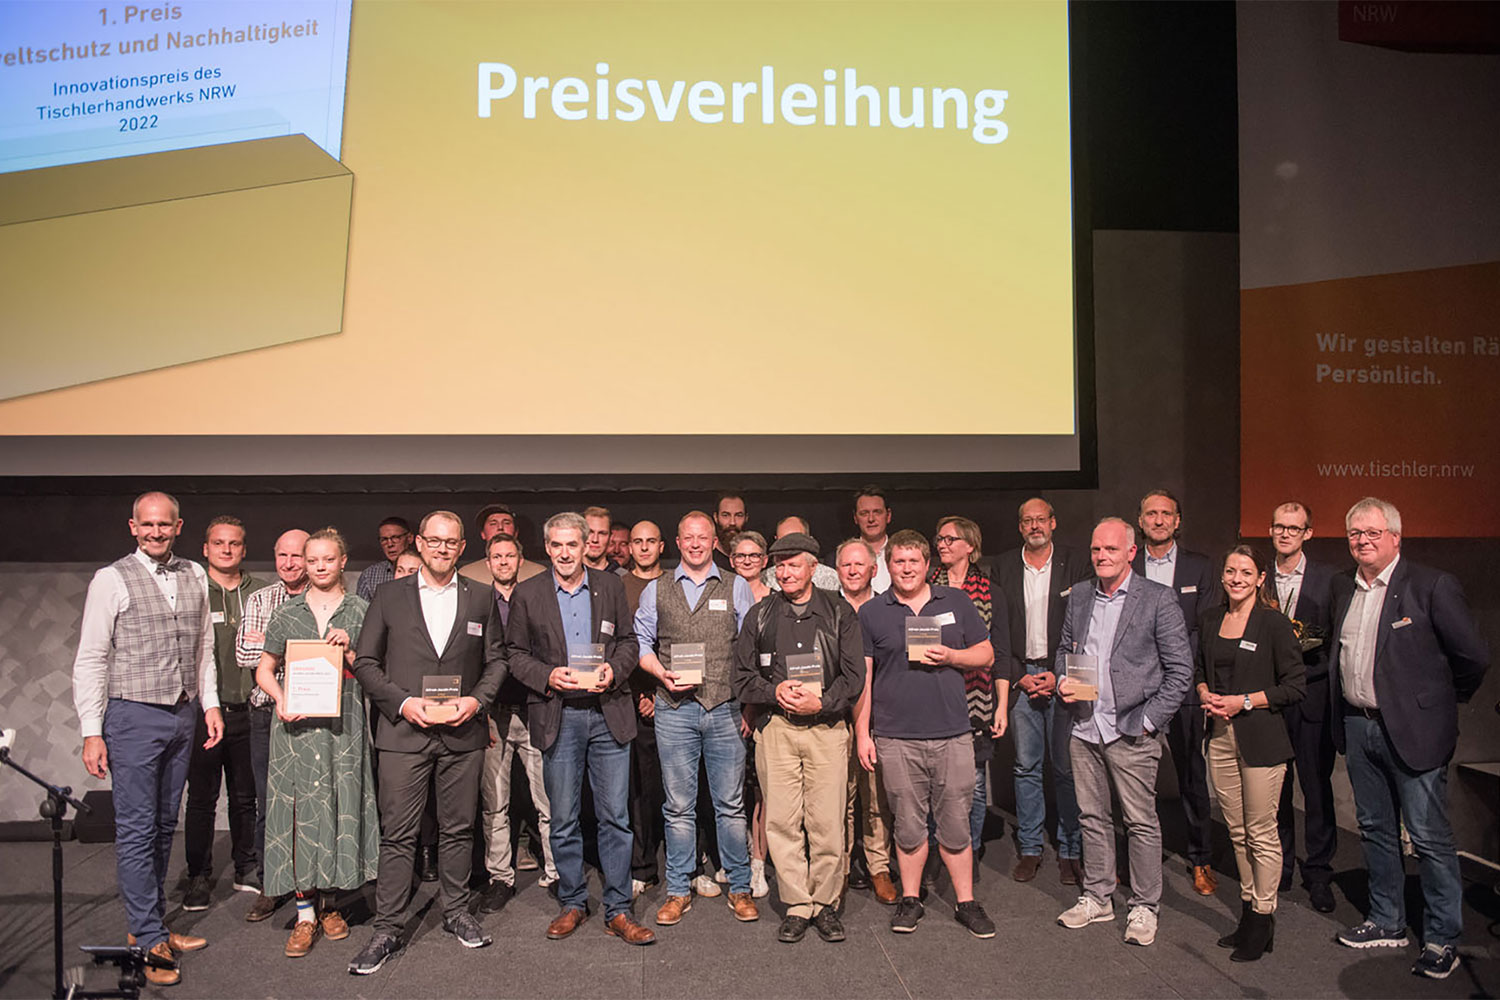 Alfred-Jacobi-Preis 2022: Platz 2 für Tischlerei Fuhrmann aus Marienmünster  für „Nachhaltigkeit und Umweltschutz“ - Kreishandwerkerschaft Höxter-Warburg